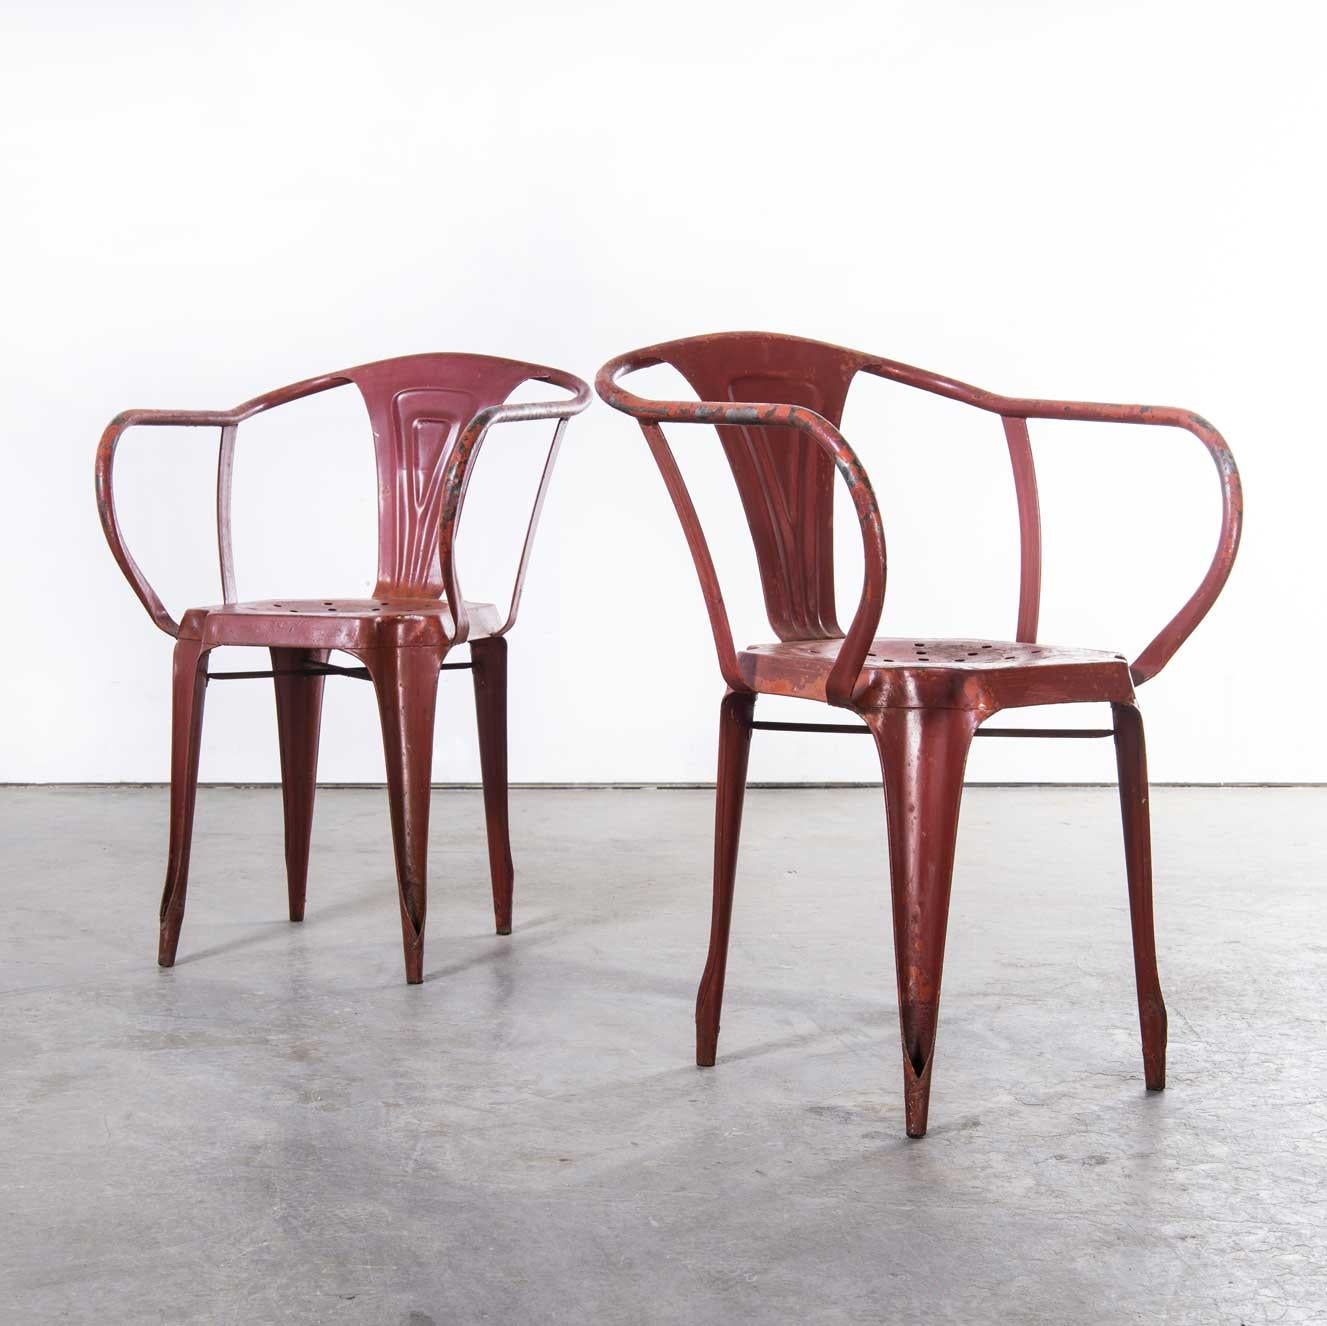 1940's Paar original französische Multipl's Sessel
1940's Pair of Original French Multipl's Armchairs. Entworfen von Joseph Mathieu und hergestellt bei Pierre Benite in Lyon. Diese Stühle sind ein ikonischer Teil der französischen